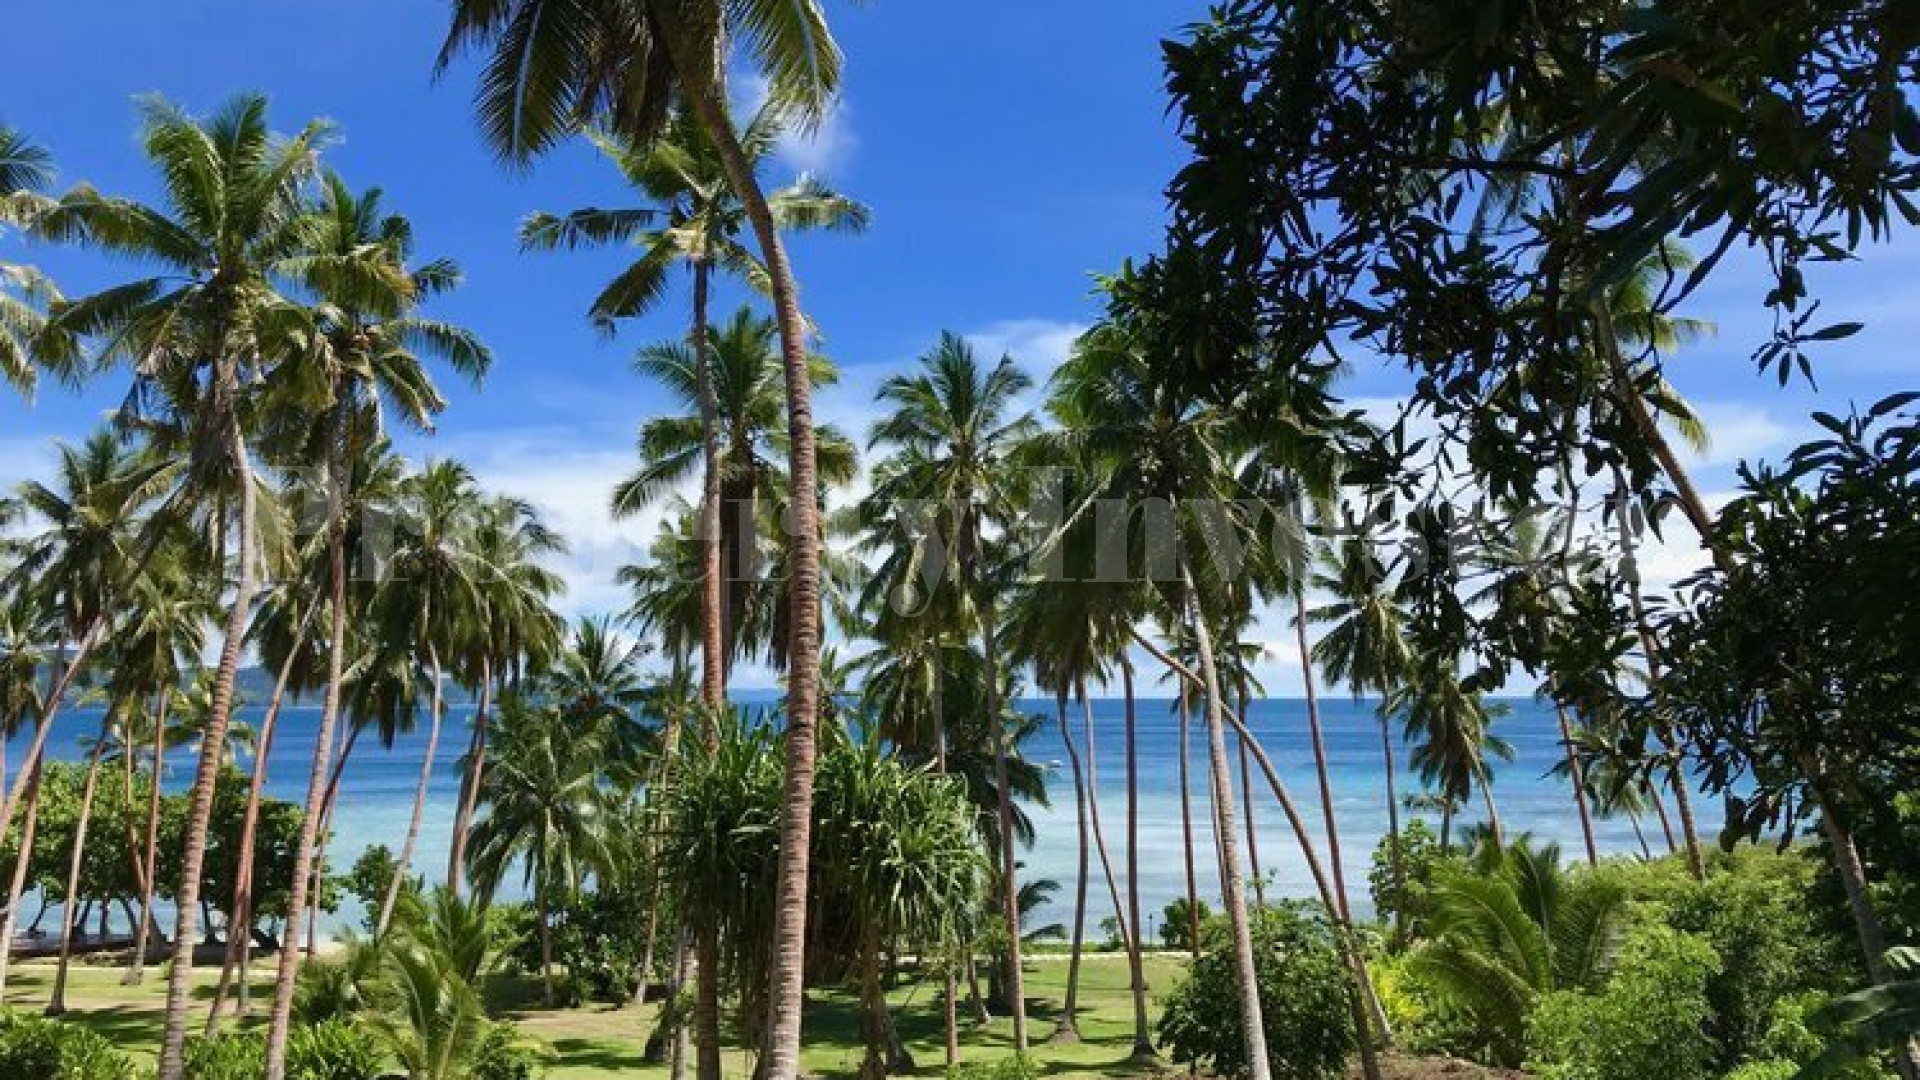 Продаётся обладатель наград островной бутик-отель с 8 виллами на Фиджи